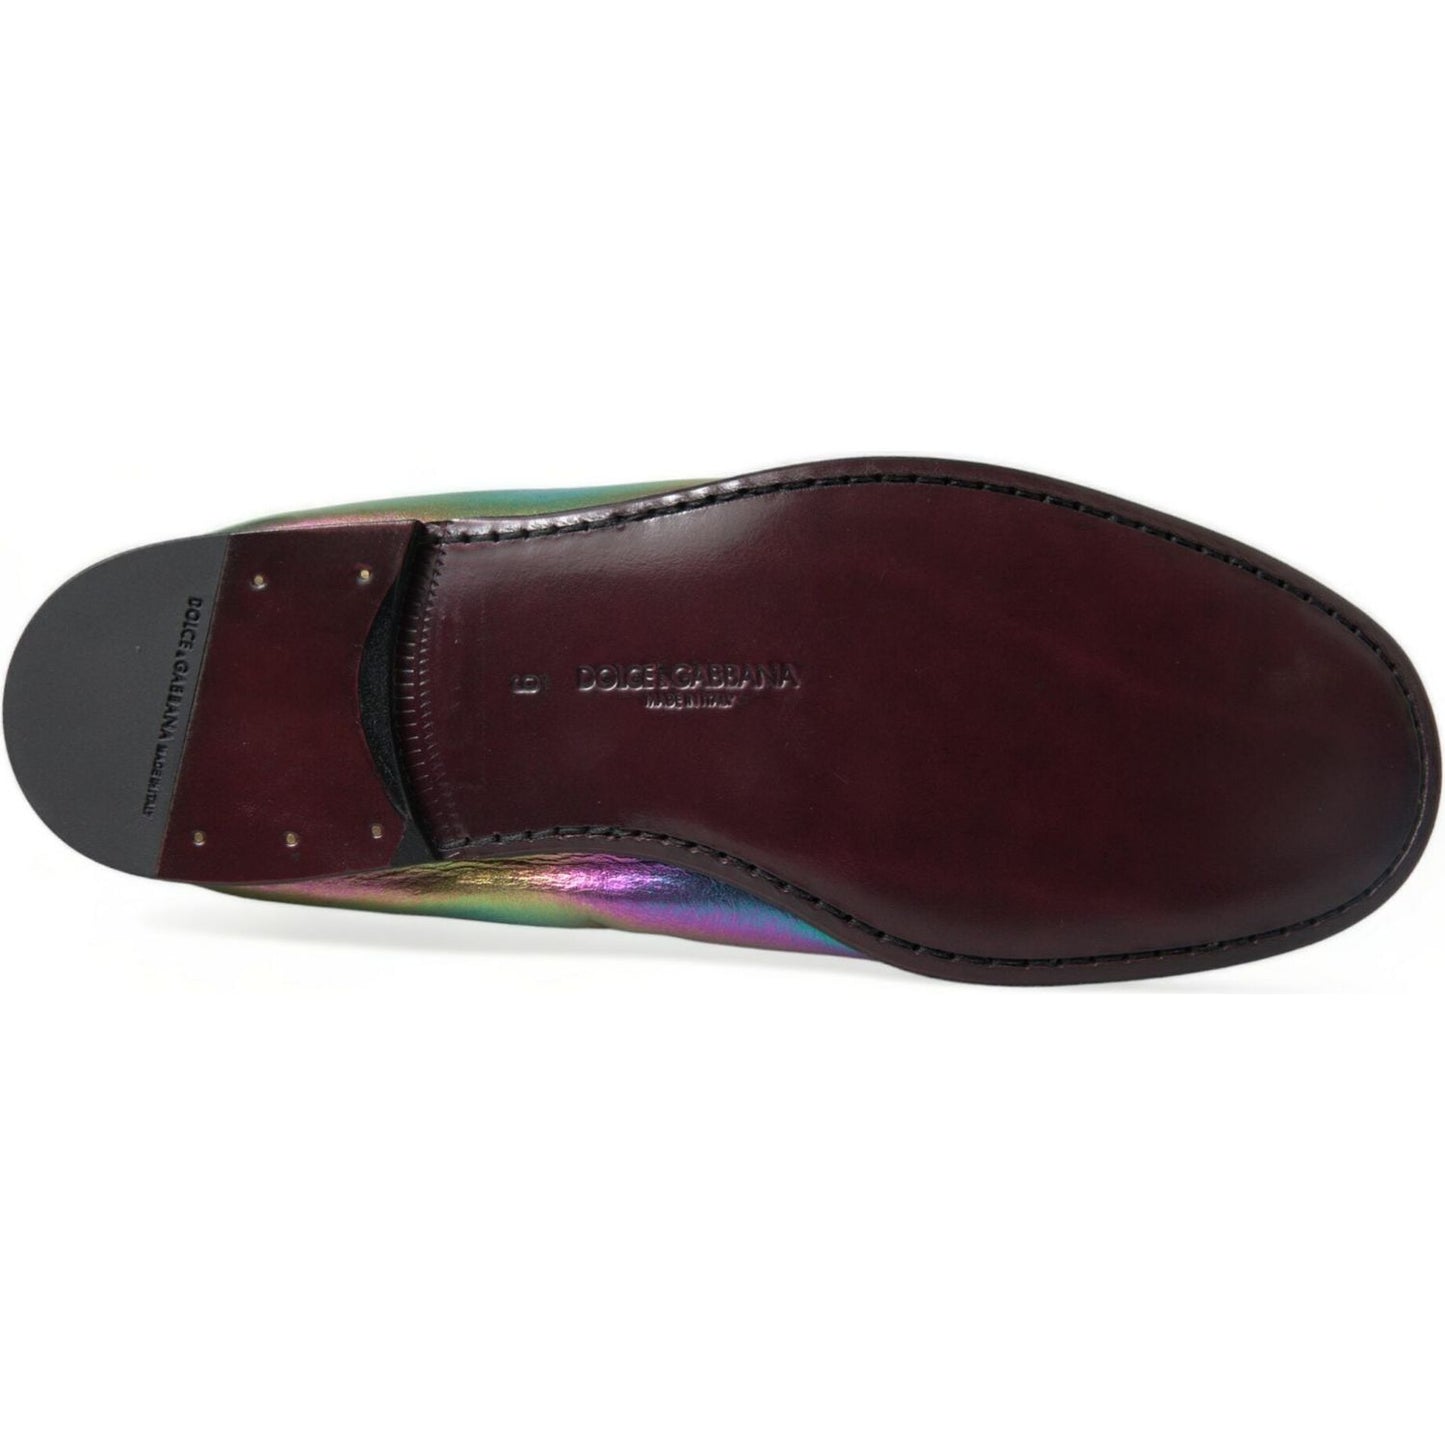 Dolce & Gabbana Elegant Iridescent Loafers for Gents multicolor-leather-dg-logo-loafer-dress-shoes